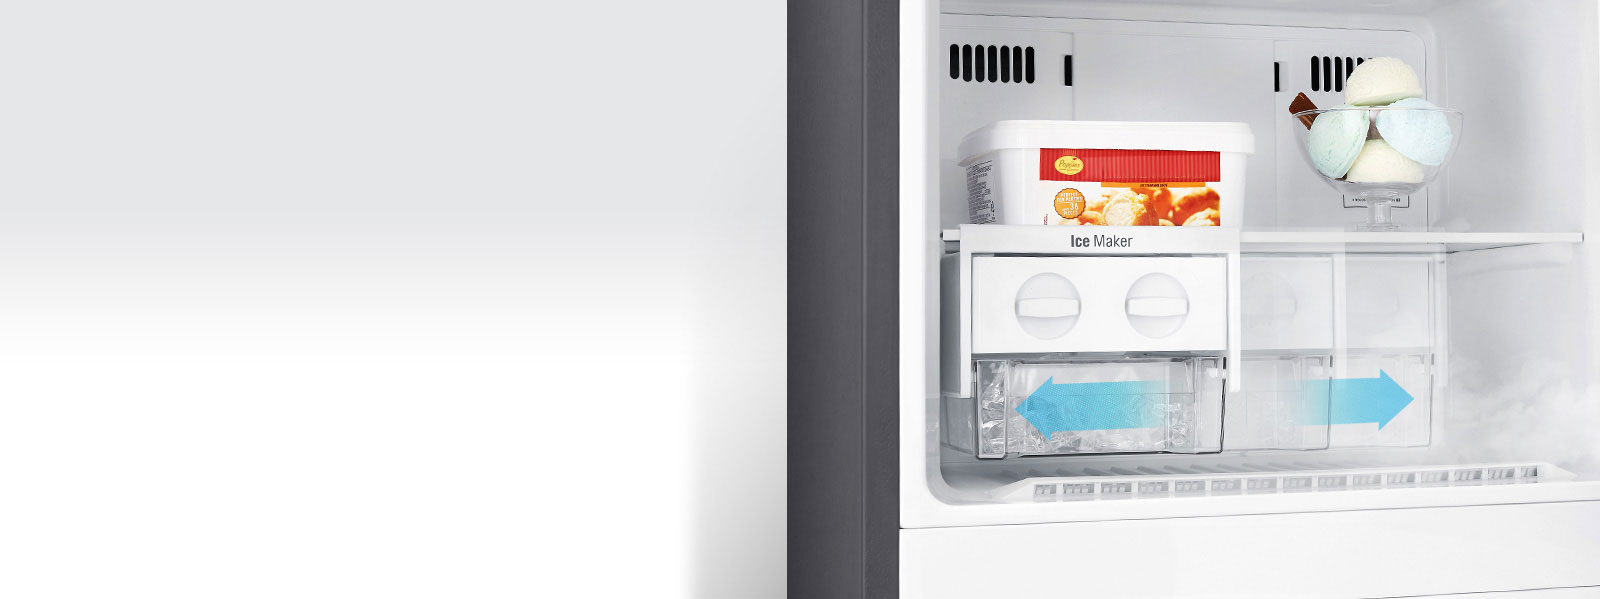 Tủ lạnh LG inverter GN-L225S - khi lanh da chieu